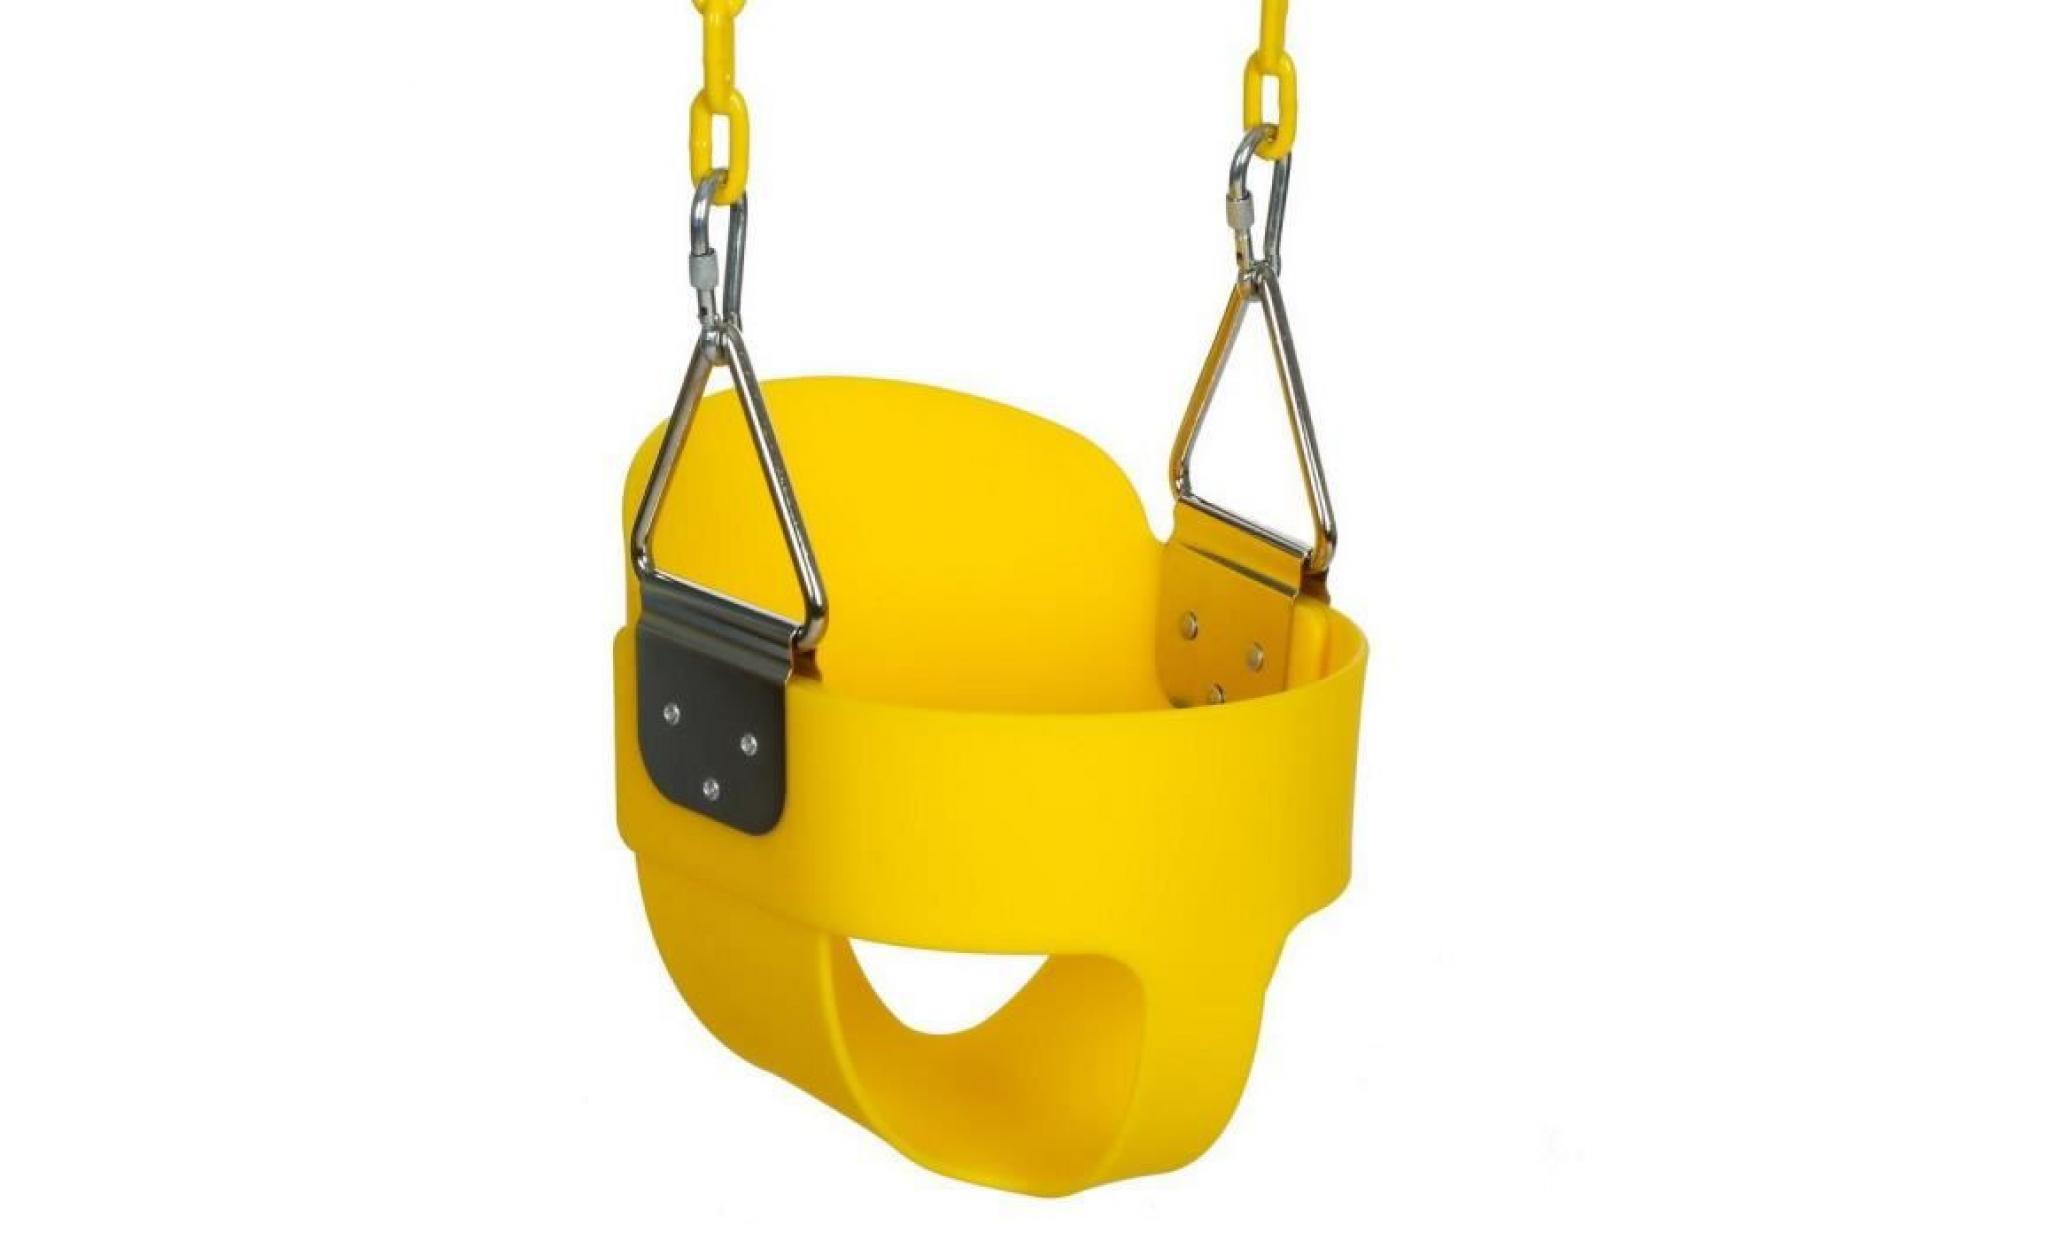 berceau swing baquet avec chaîne pour jardin jeux en plein air enfants jaune